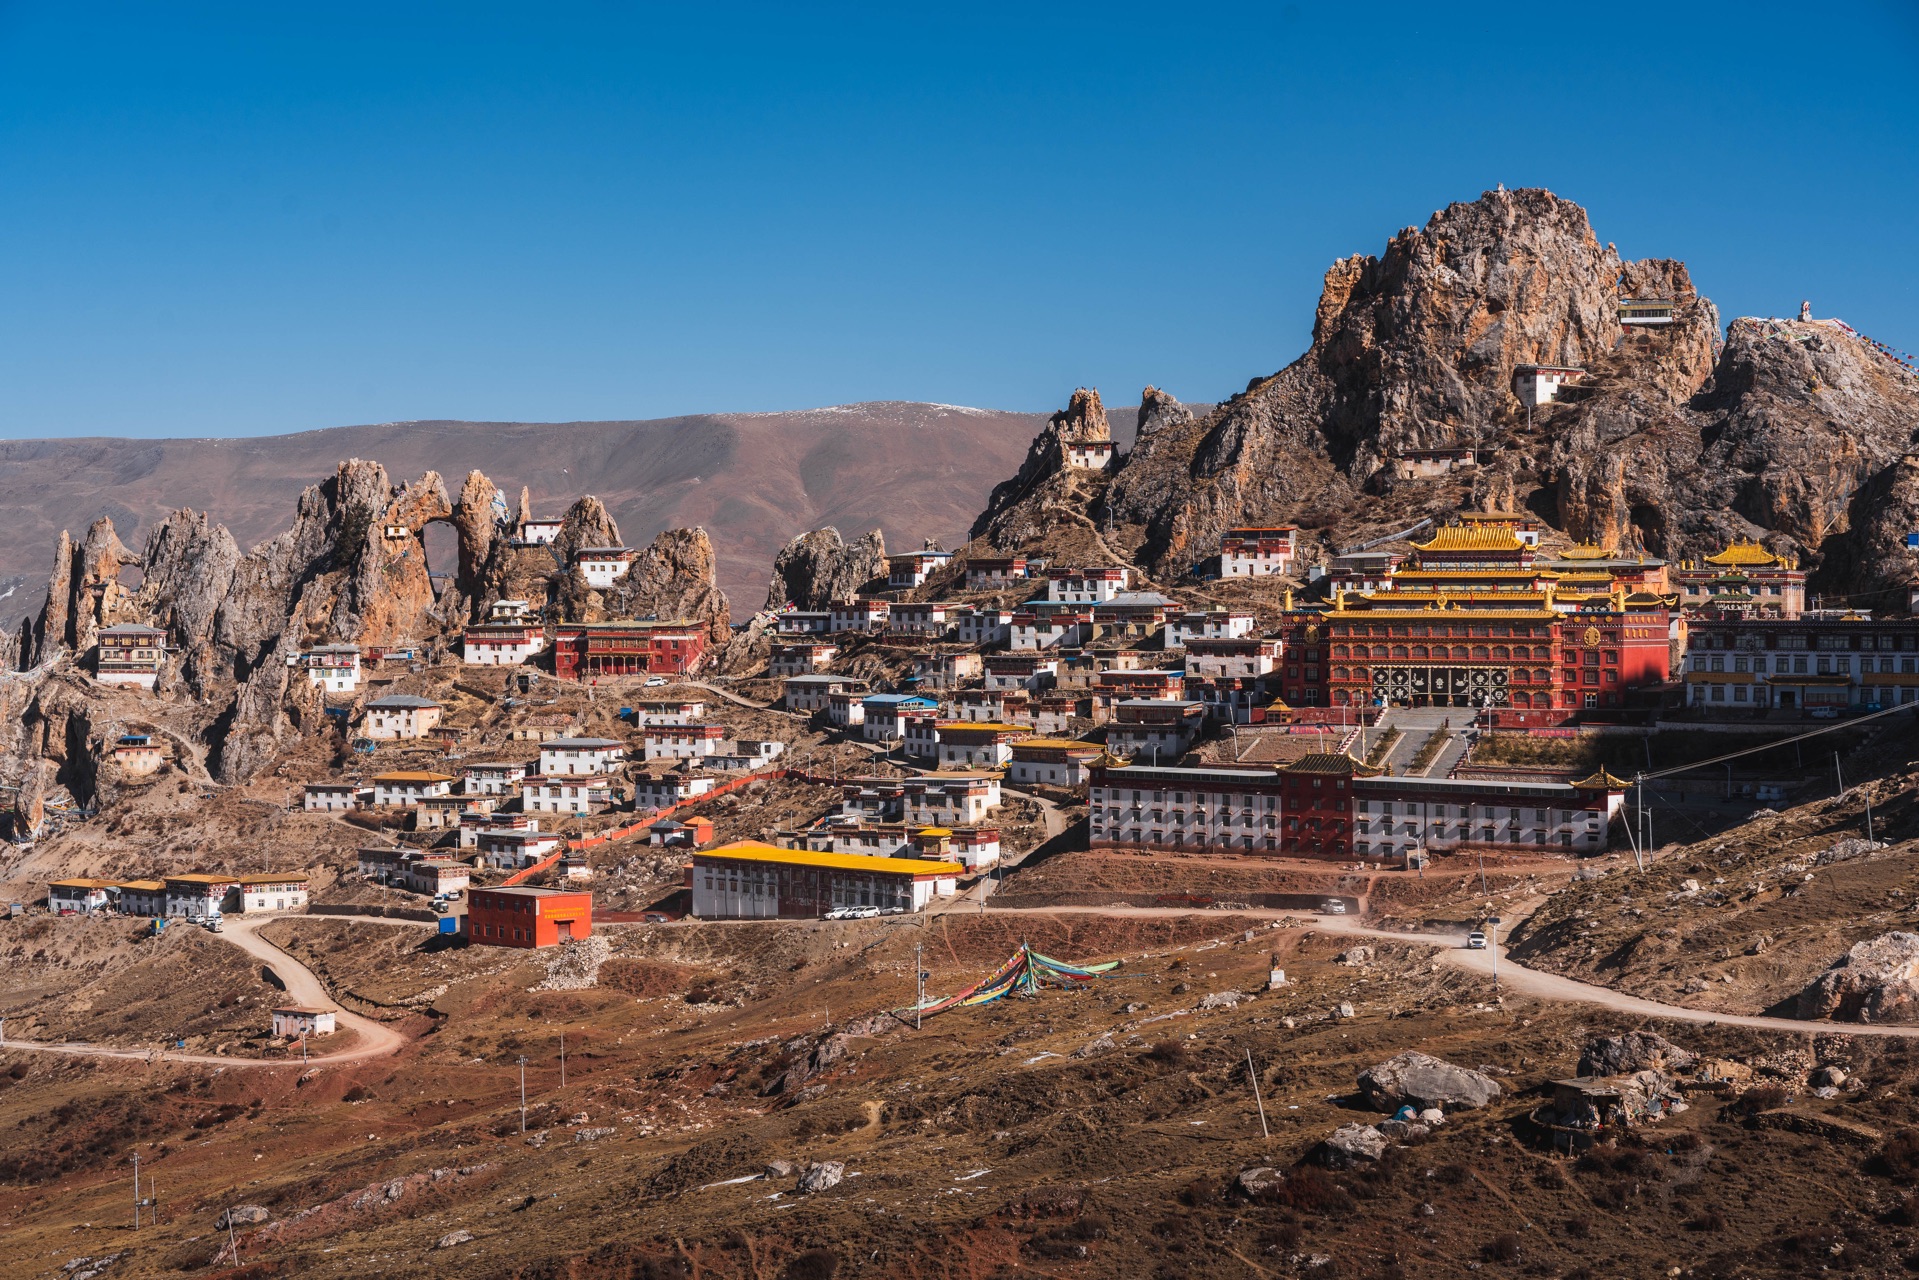 孜珠寺：川藏北线317不容错过的神圣寺庙，修建在天空之城的庙宇殿堂，始建时间比布达拉宫还要早